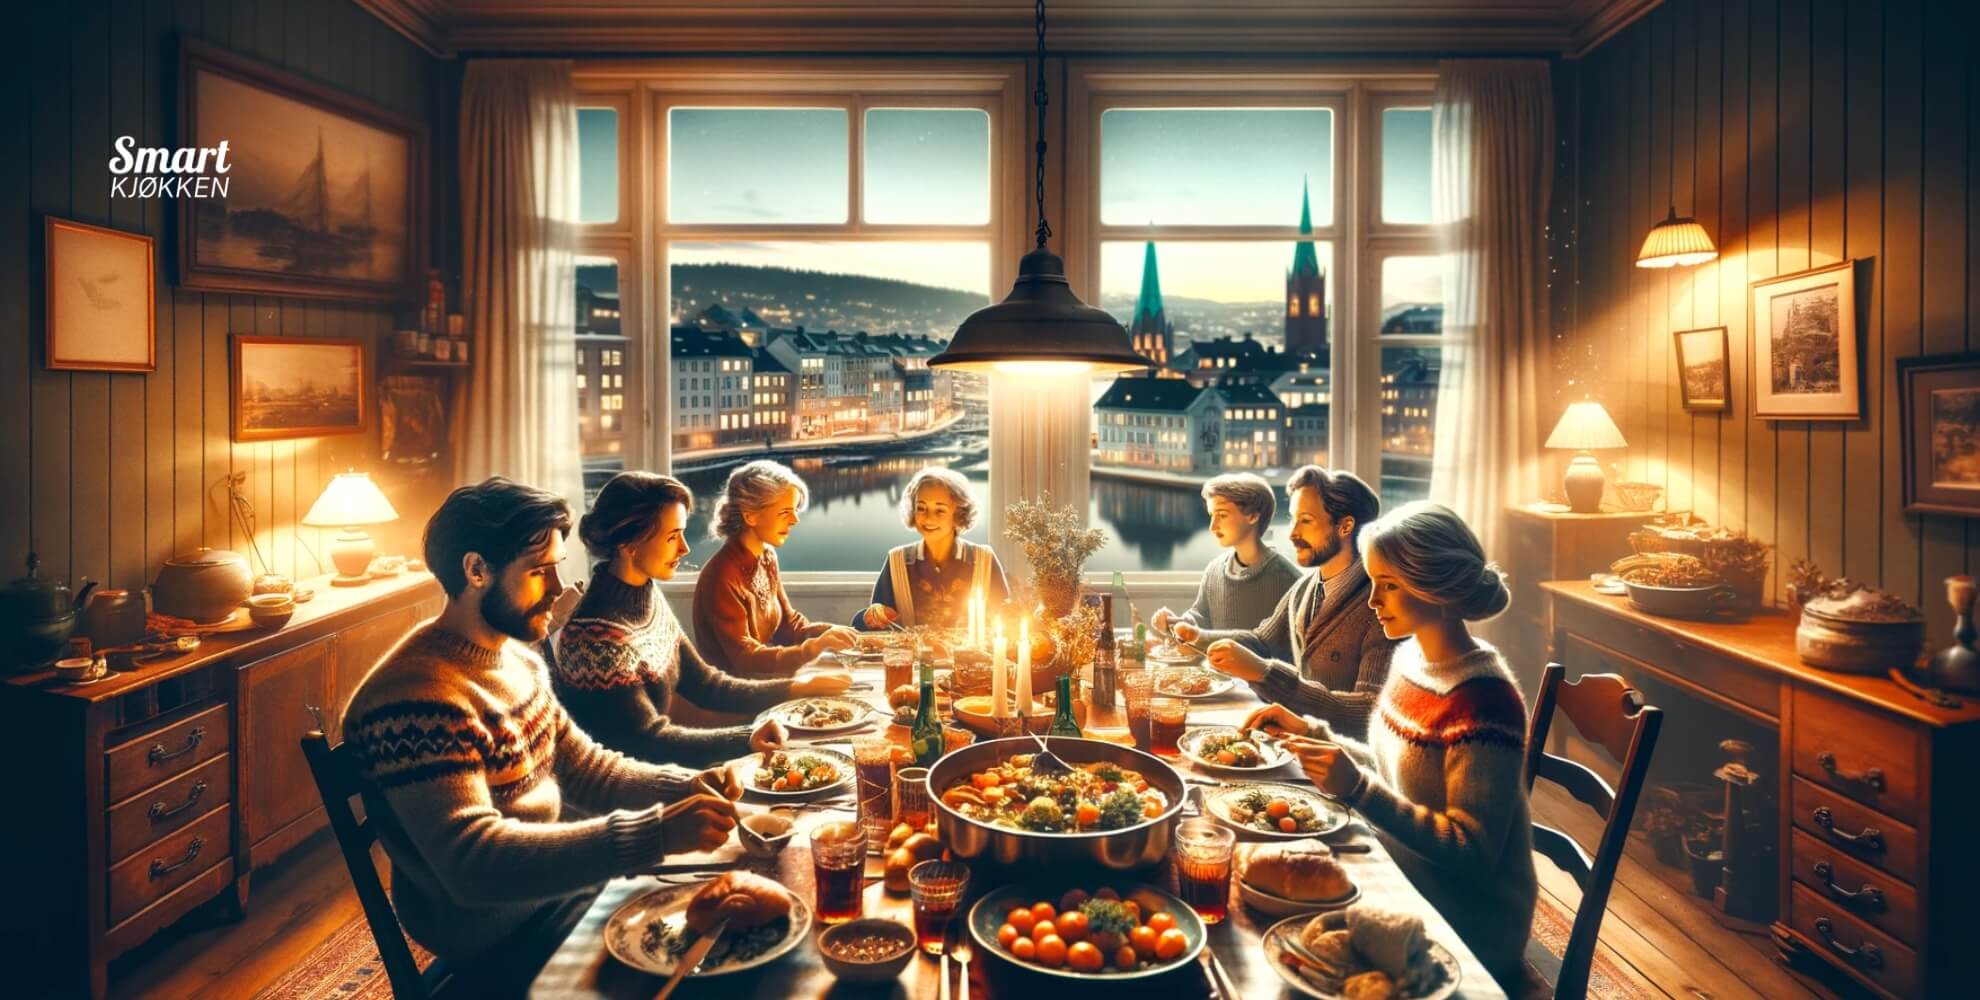 Bilde av familie som spiser middag i Oslo.